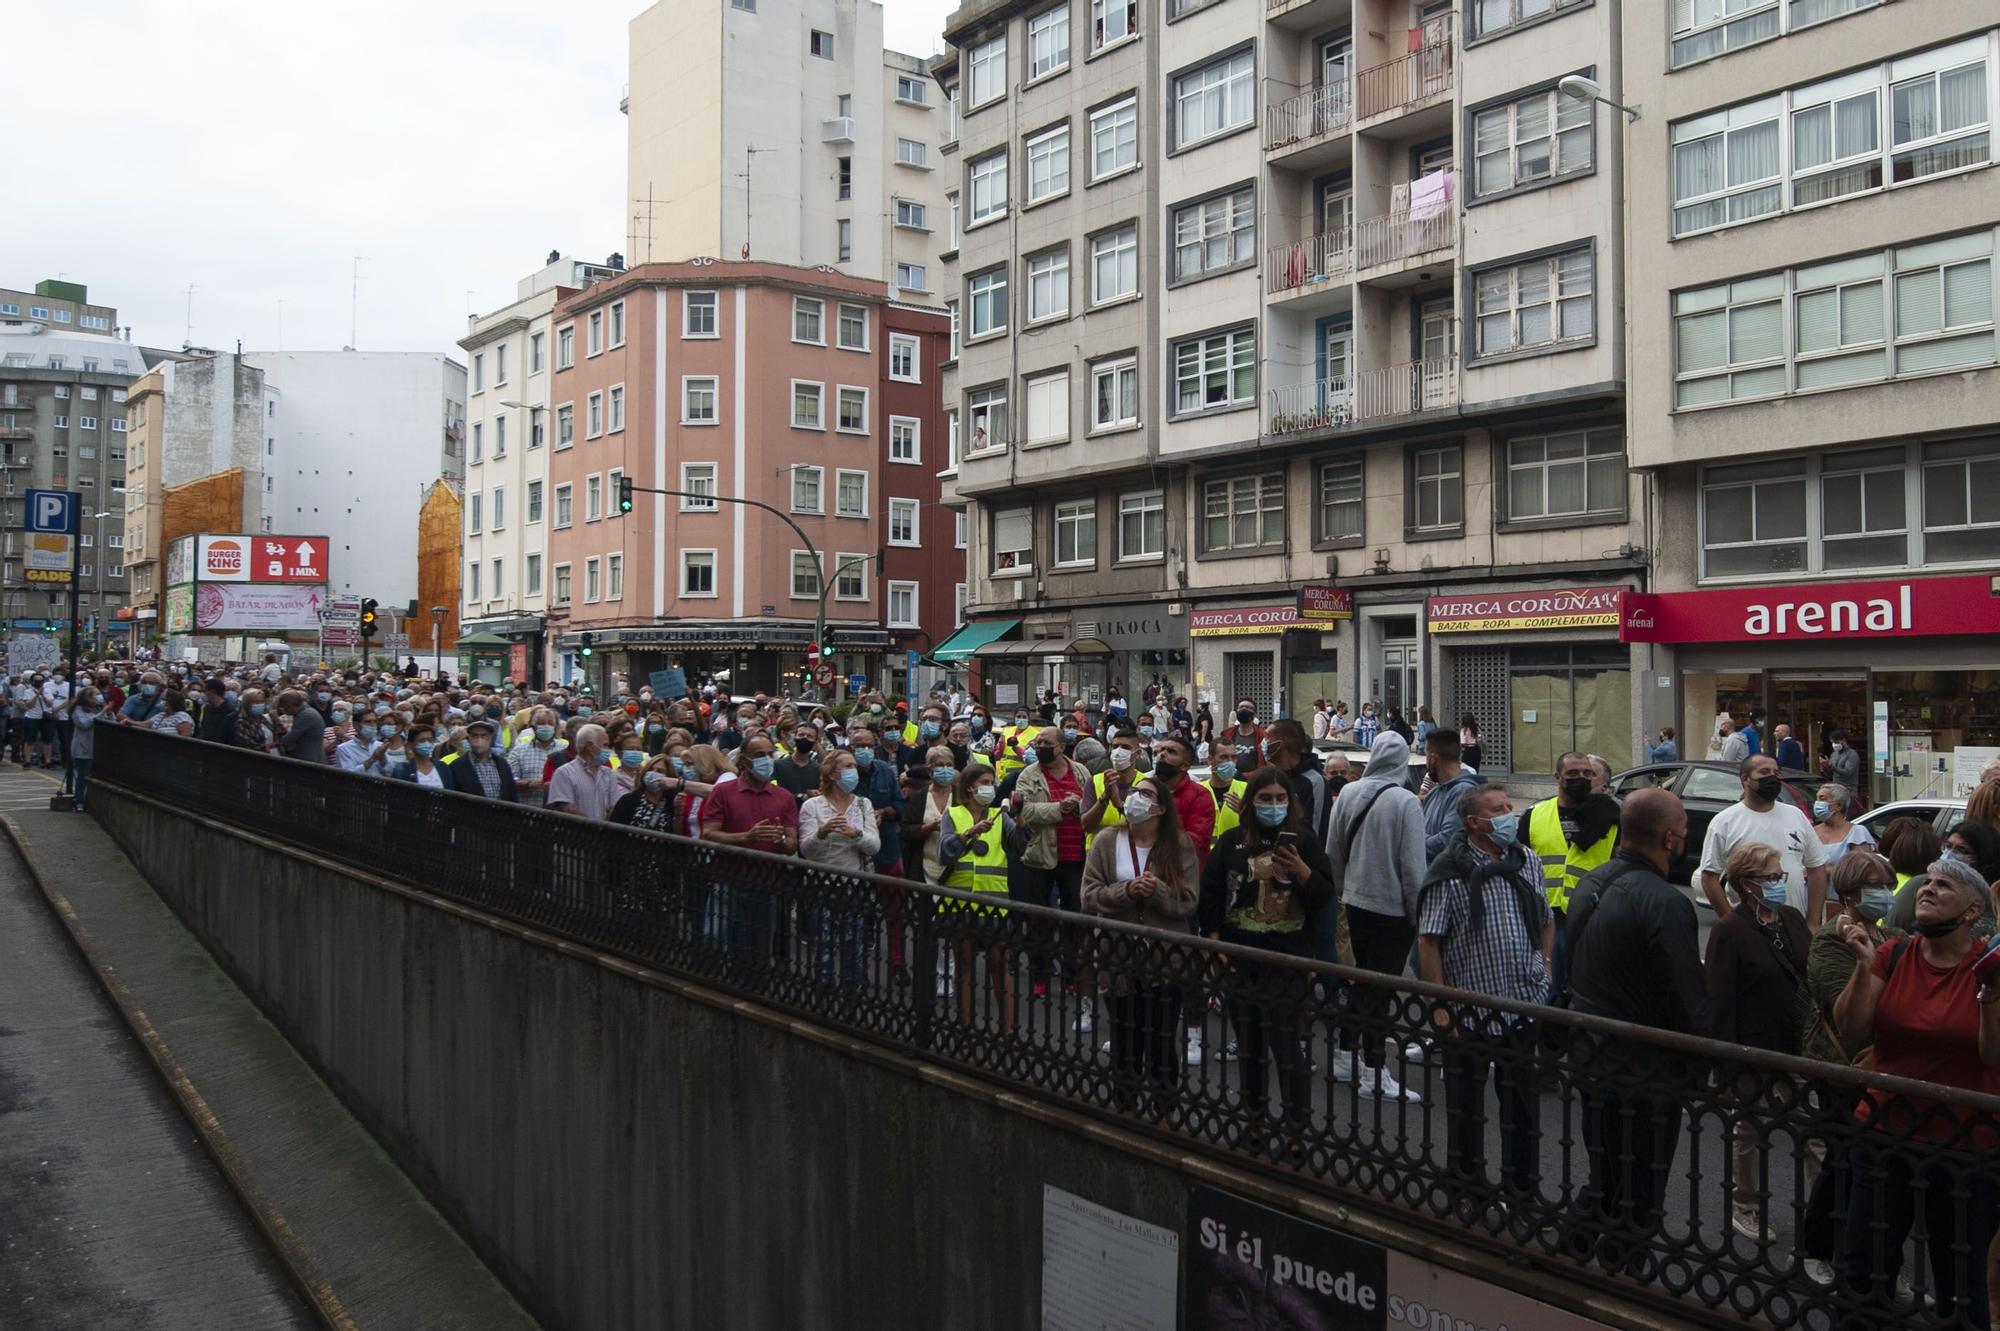 Vos Mallos rúa para denunciar “inseguridade” - A da Coruña